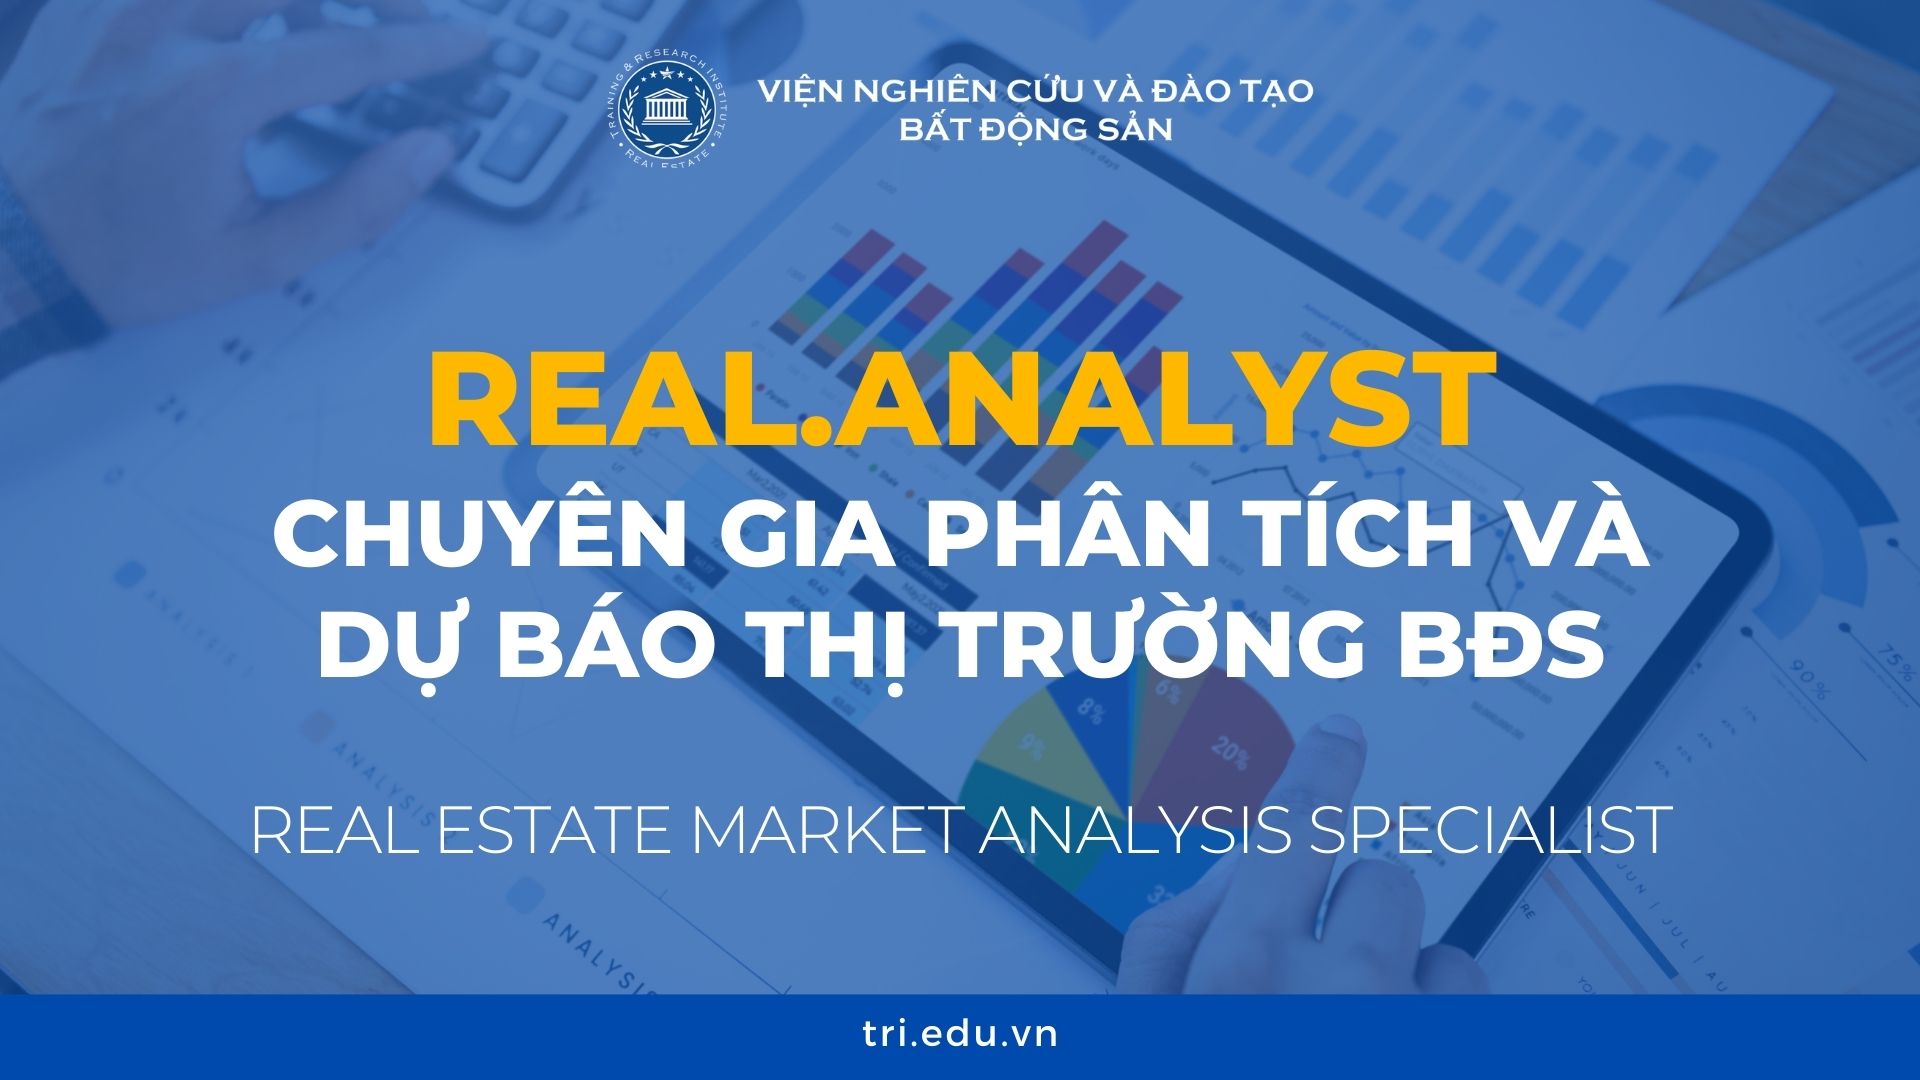 Real Analyst Chuyen Gia Phan Tich Va Du Bao Thi Truong Bat Dong San